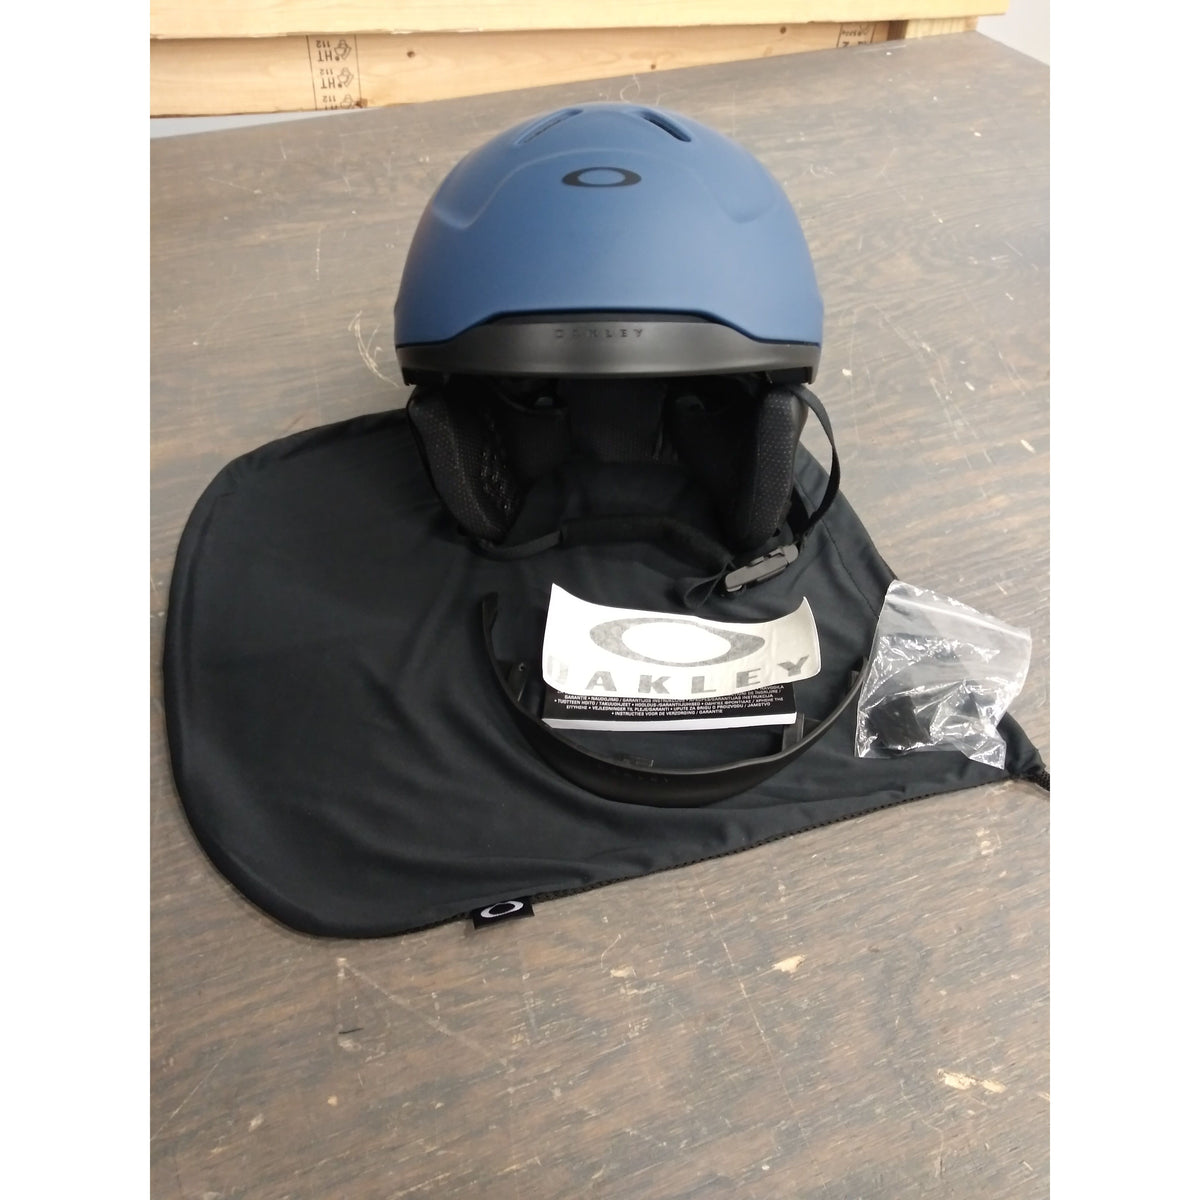 Oakley Mod 3 MIPS Mens Snow Helmet - Dark Blue - Medium - Used - Good